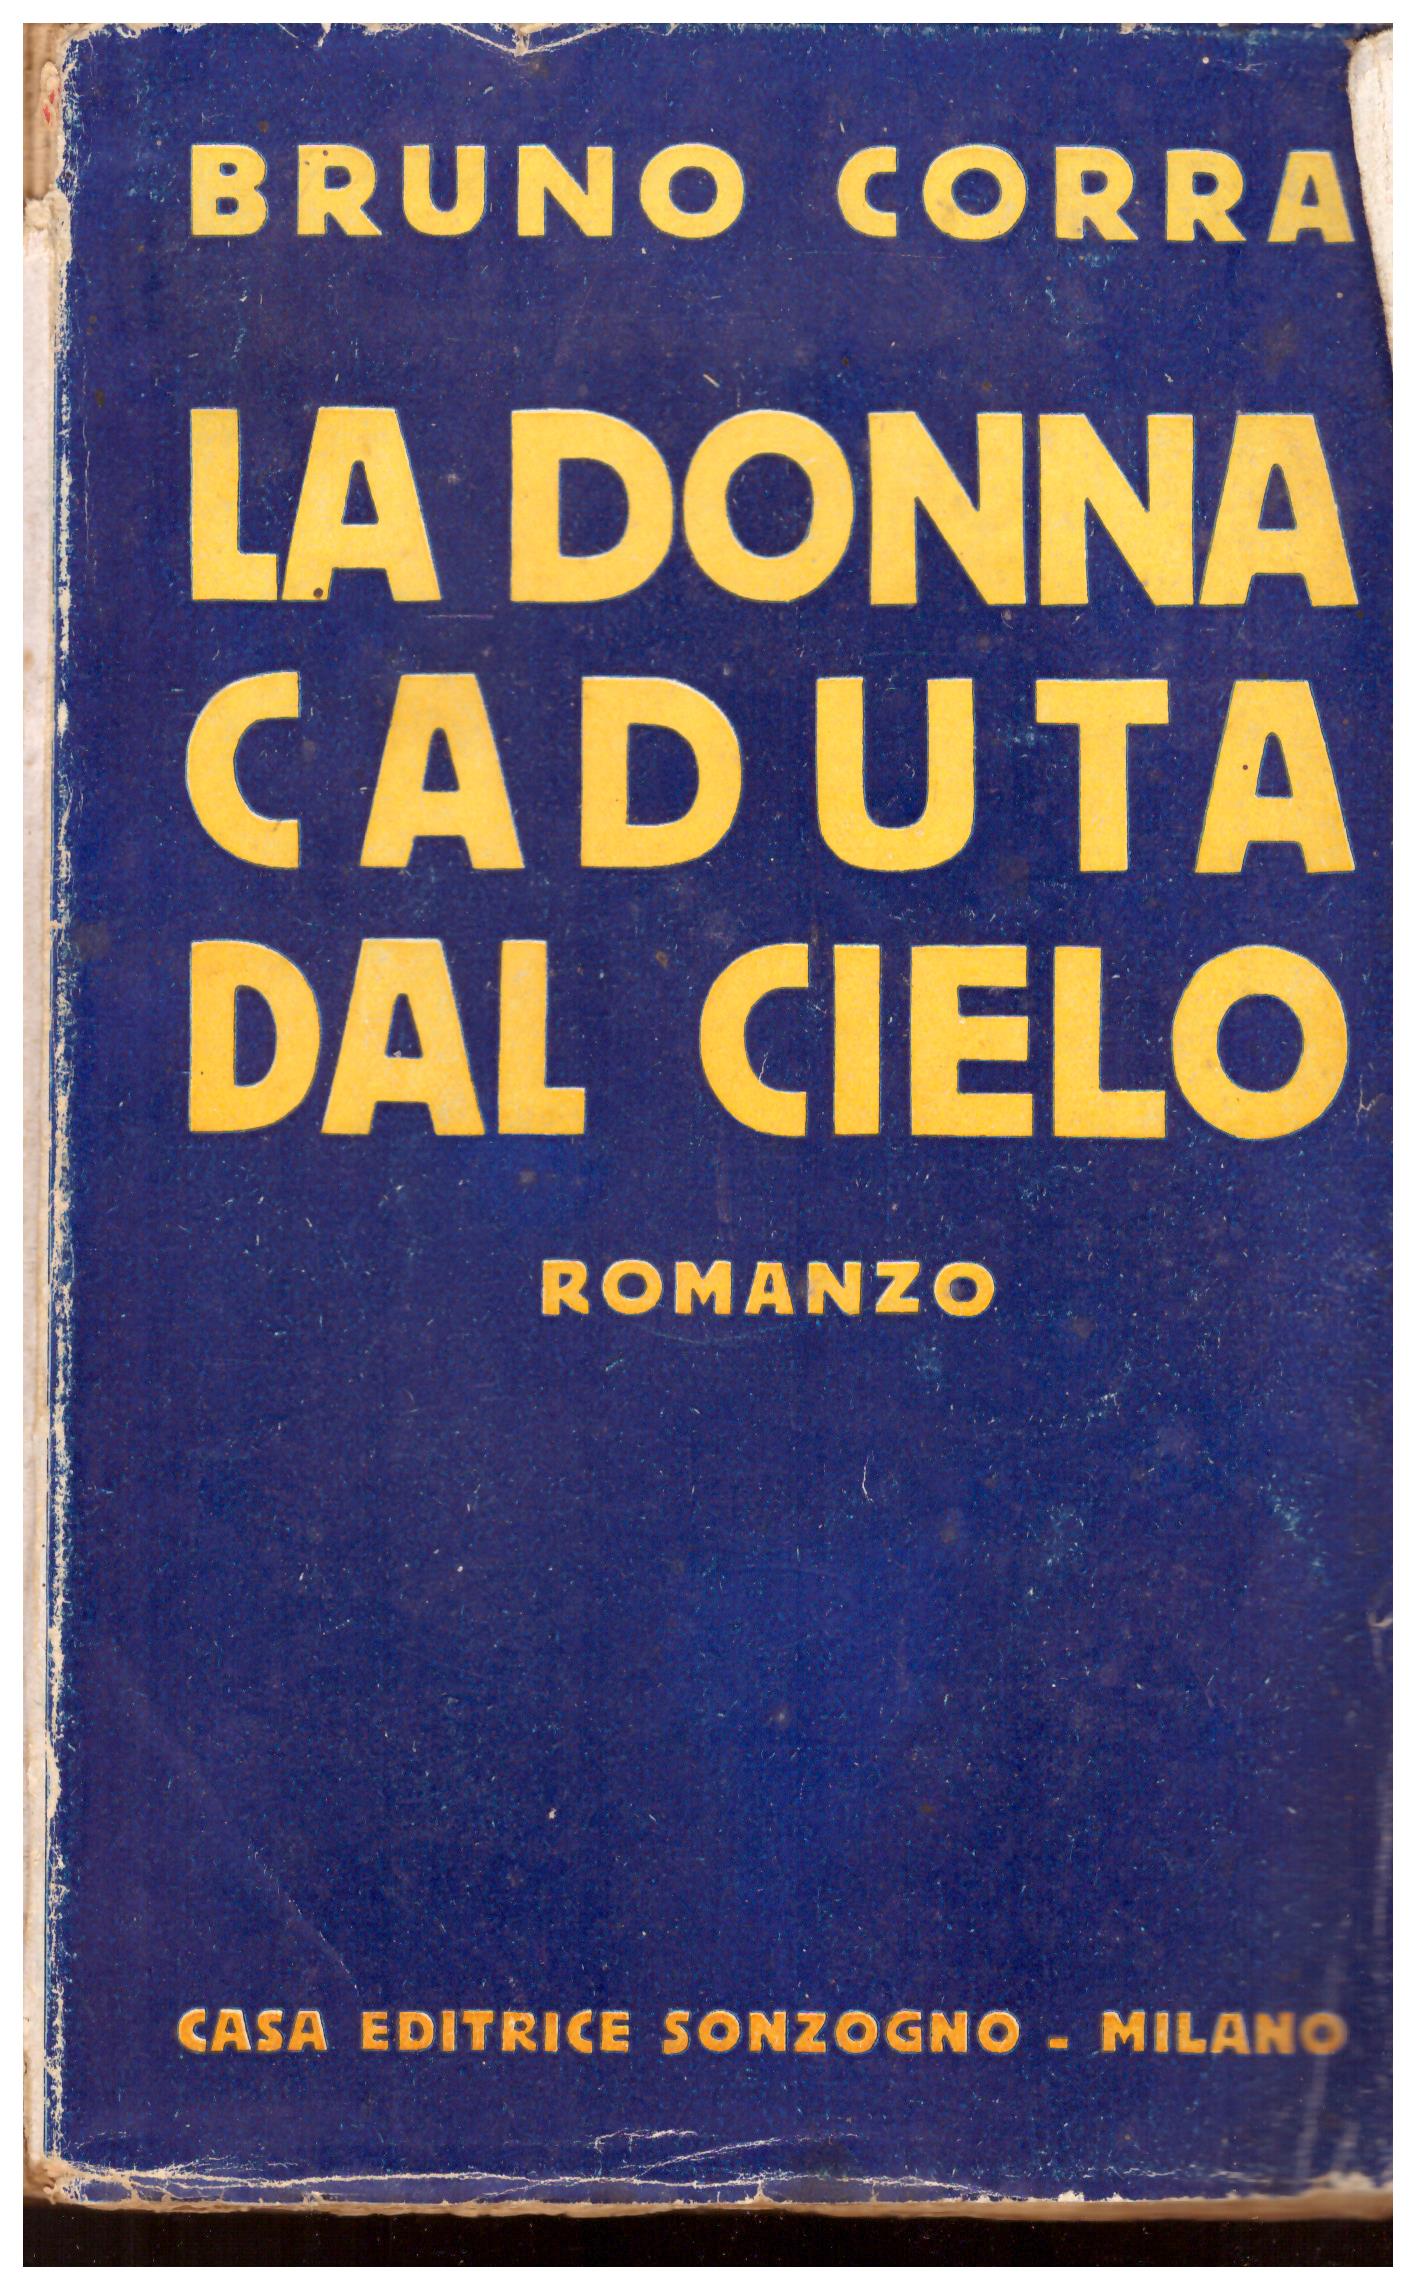 Titolo: La donna caduta dal cielo Autore: Bruno Corra  Editore: Sonzogno, Milano N.1454